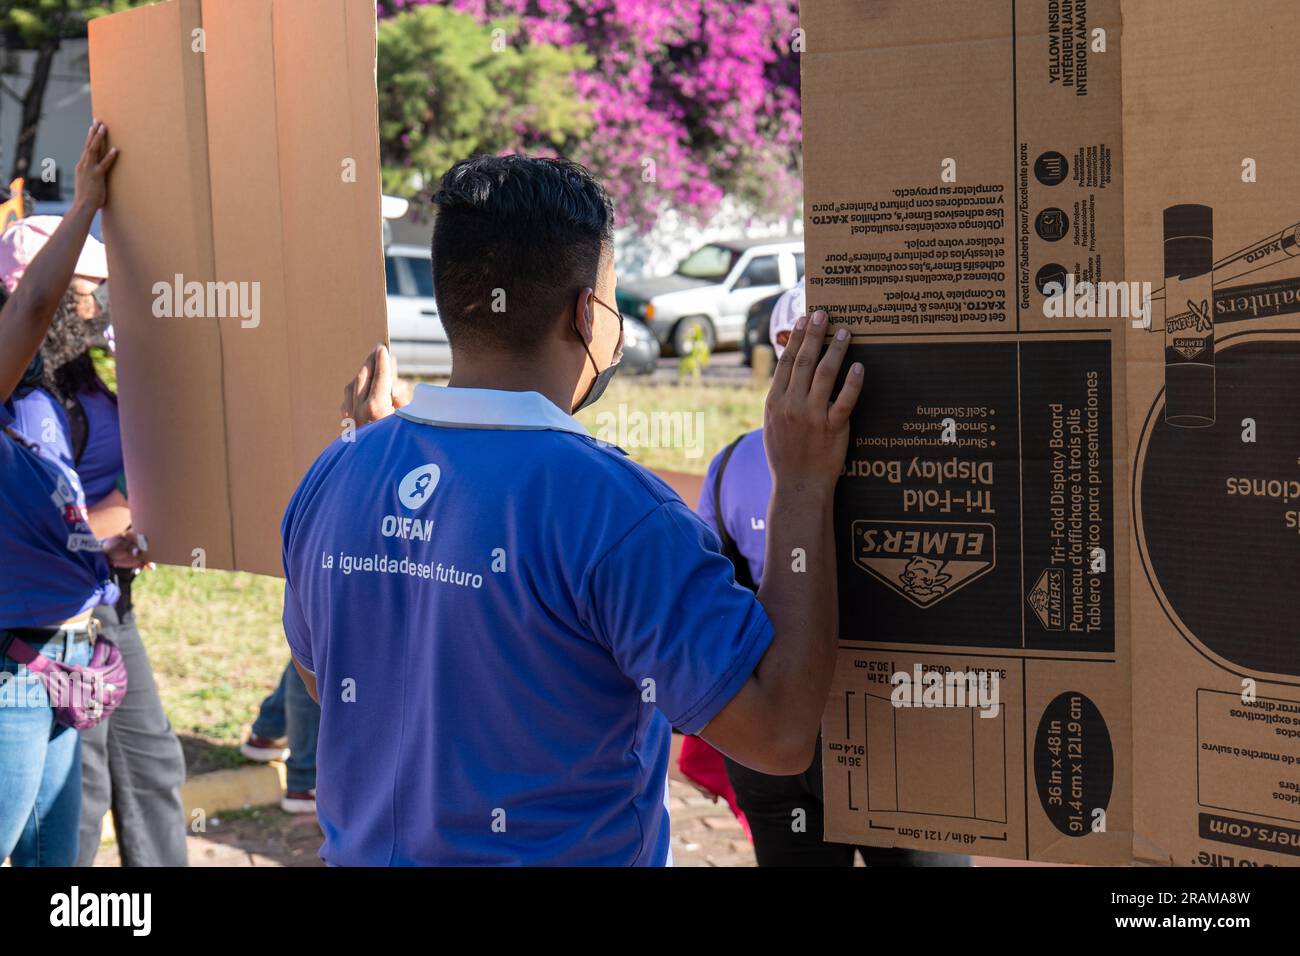 Tegucigalpa, Francisco Morazan, Honduras - 11 décembre 2022 : un jeune homme brun avec une chemise violette avec le logo Oxfam à l'arrière tient des panneaux en carton à A. Banque D'Images